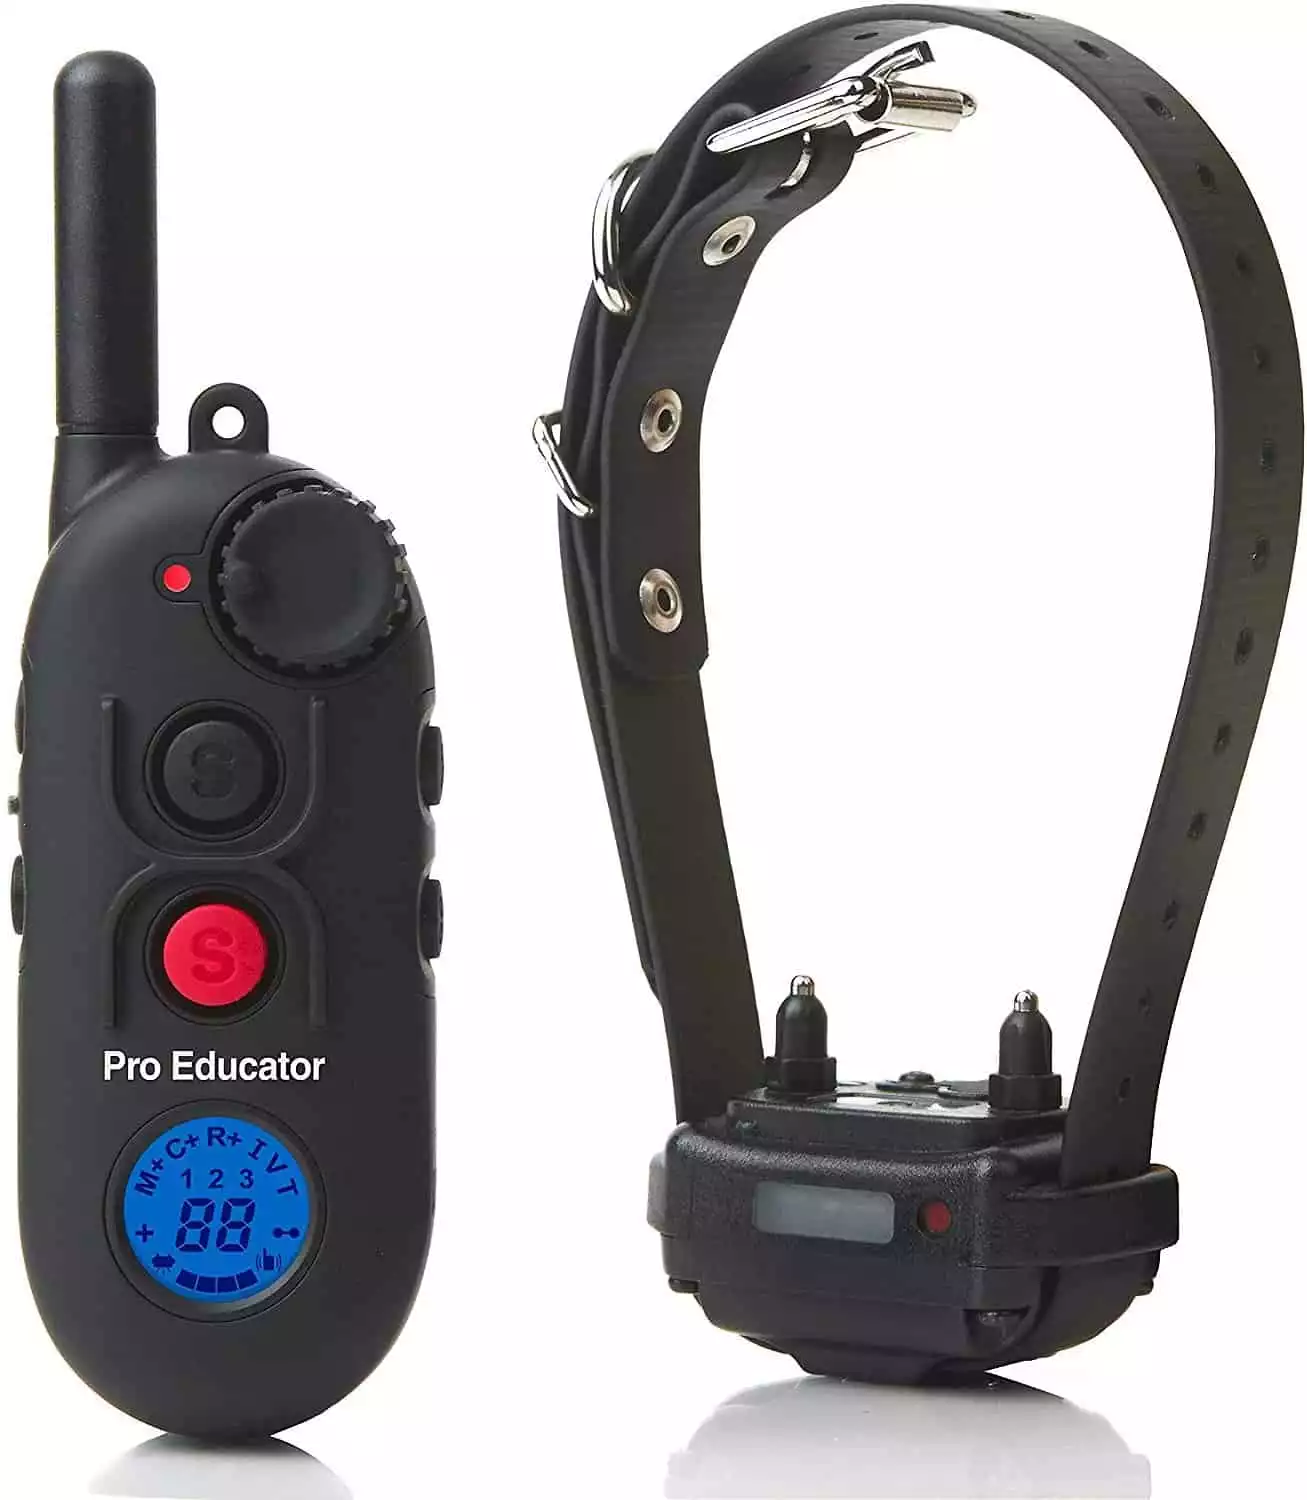 Educator Pro E-collar Kit